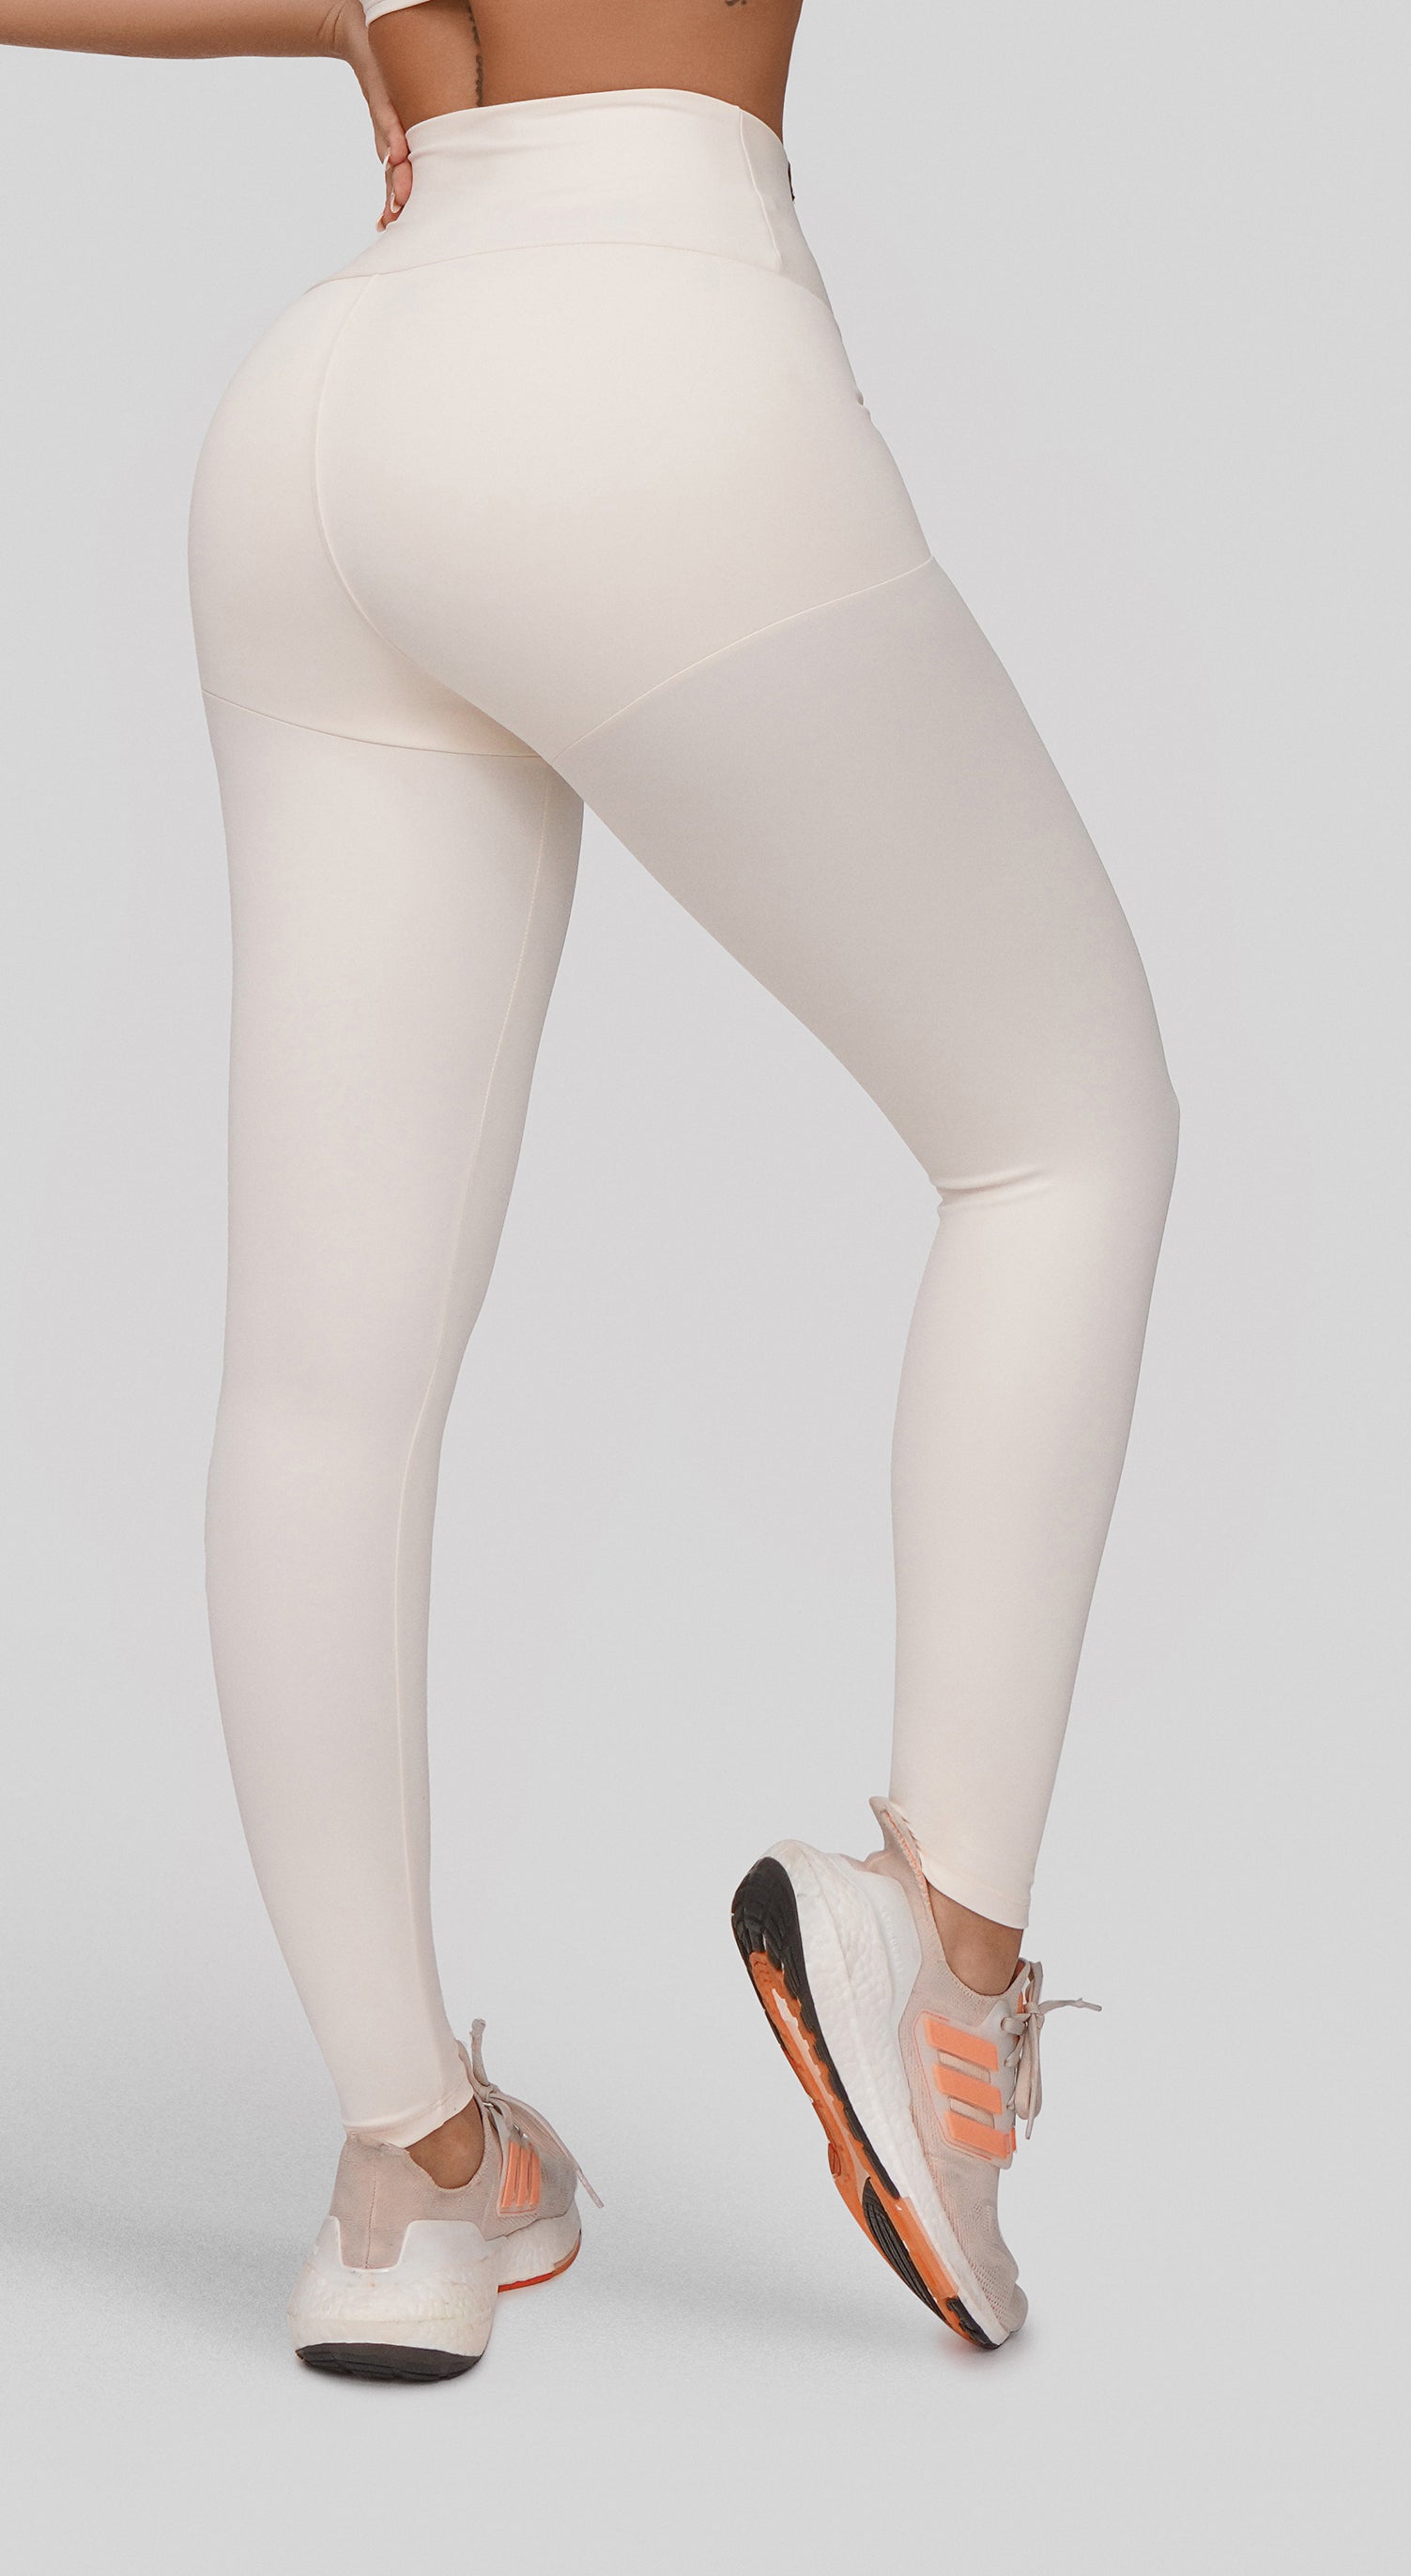 Shascullfites White Cotton Leggings Push Up Leggings Women Gym Leggings  Scrunch Tights Female High Waist For Tall Women